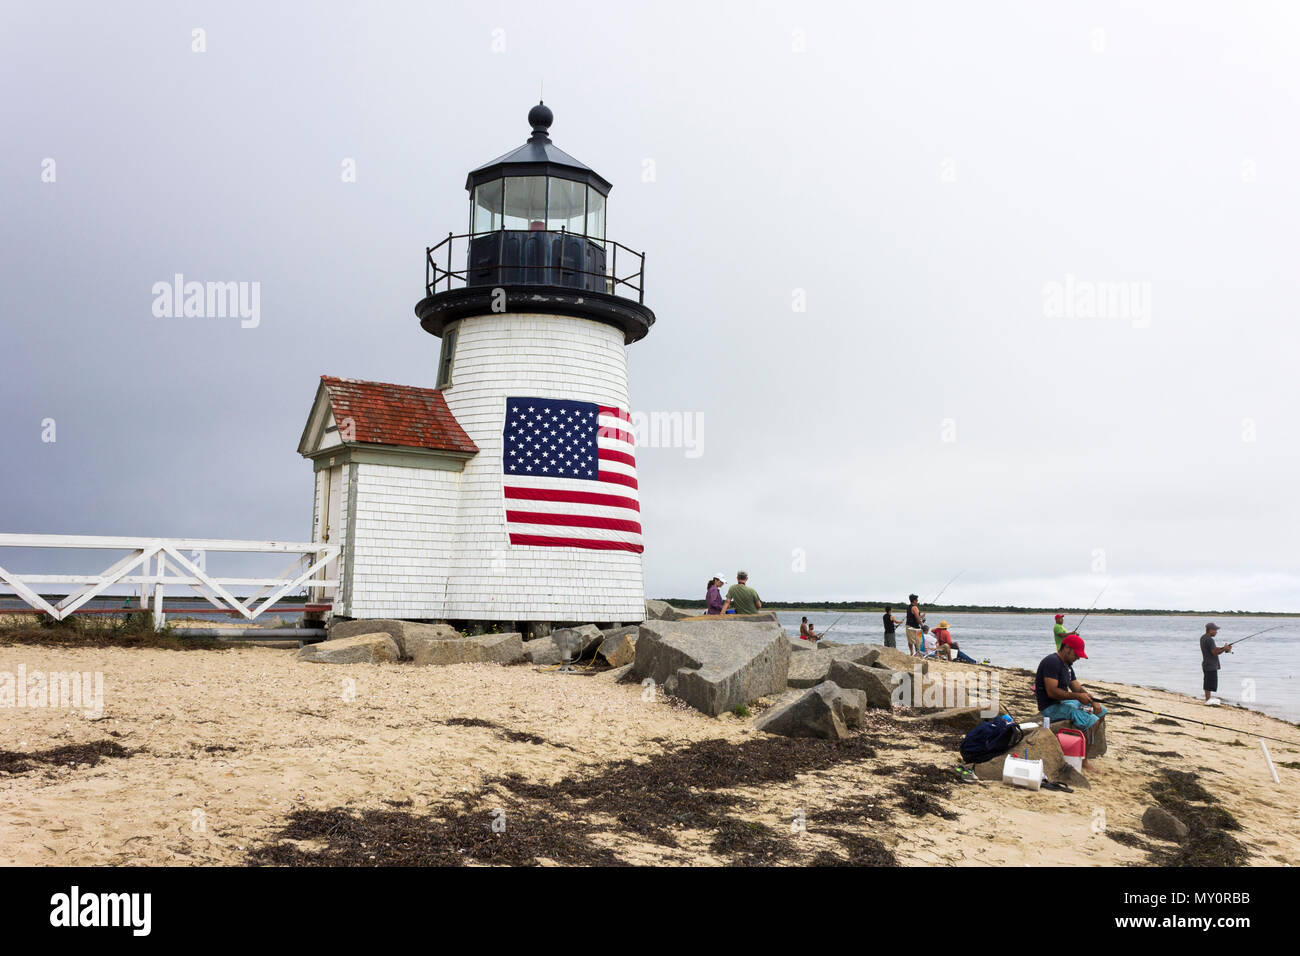 Nantucket, Massachusetts. Brant Point Light, un phare situé sur le port de l'île de Nantucket, avec plusieurs personnes de la pêche et un drapeau américain Banque D'Images